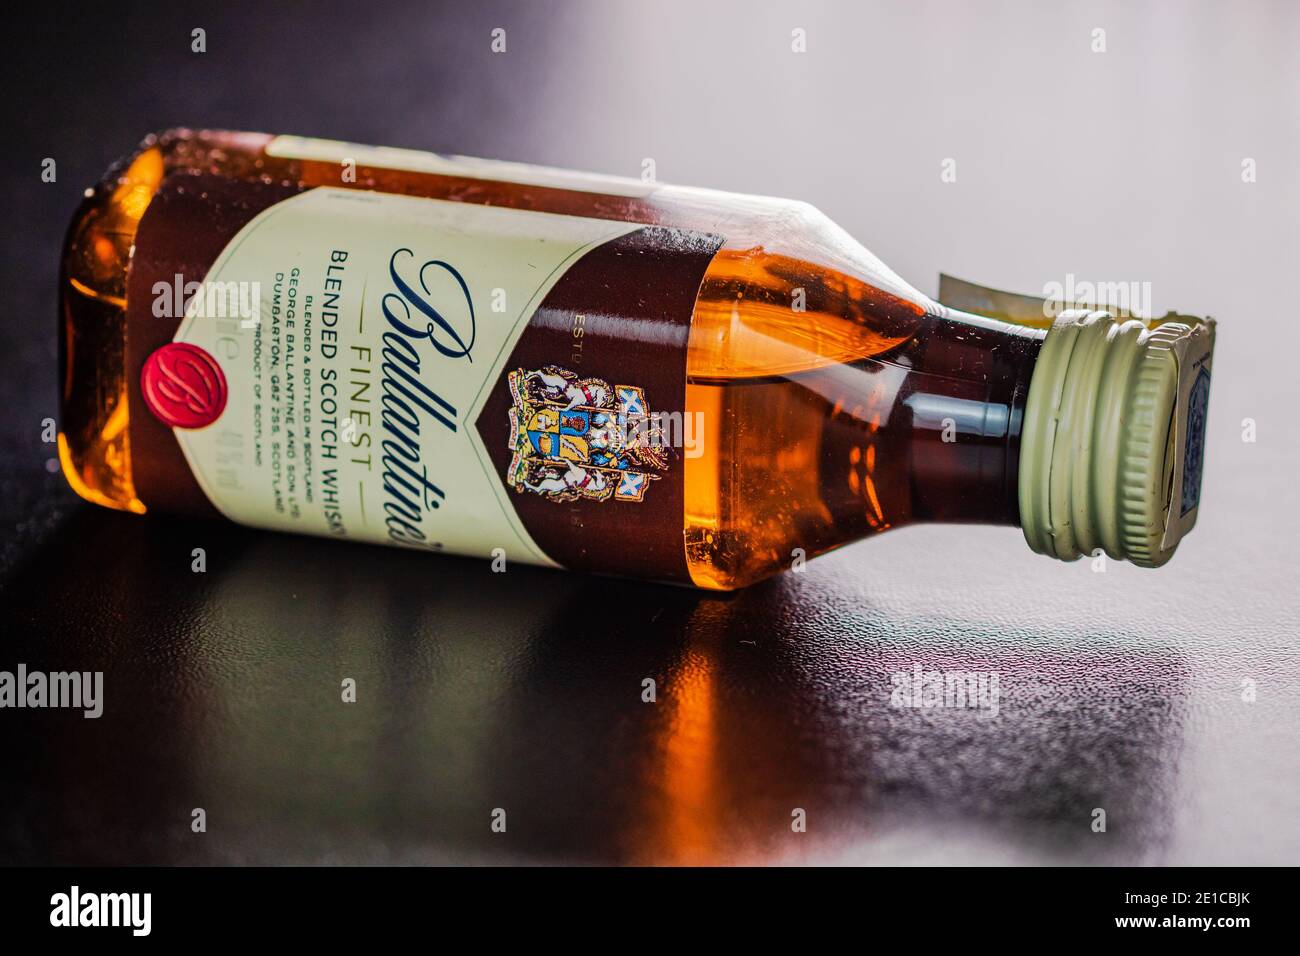 Ballantines whisky isolated on white background Stock Photo - Alamy